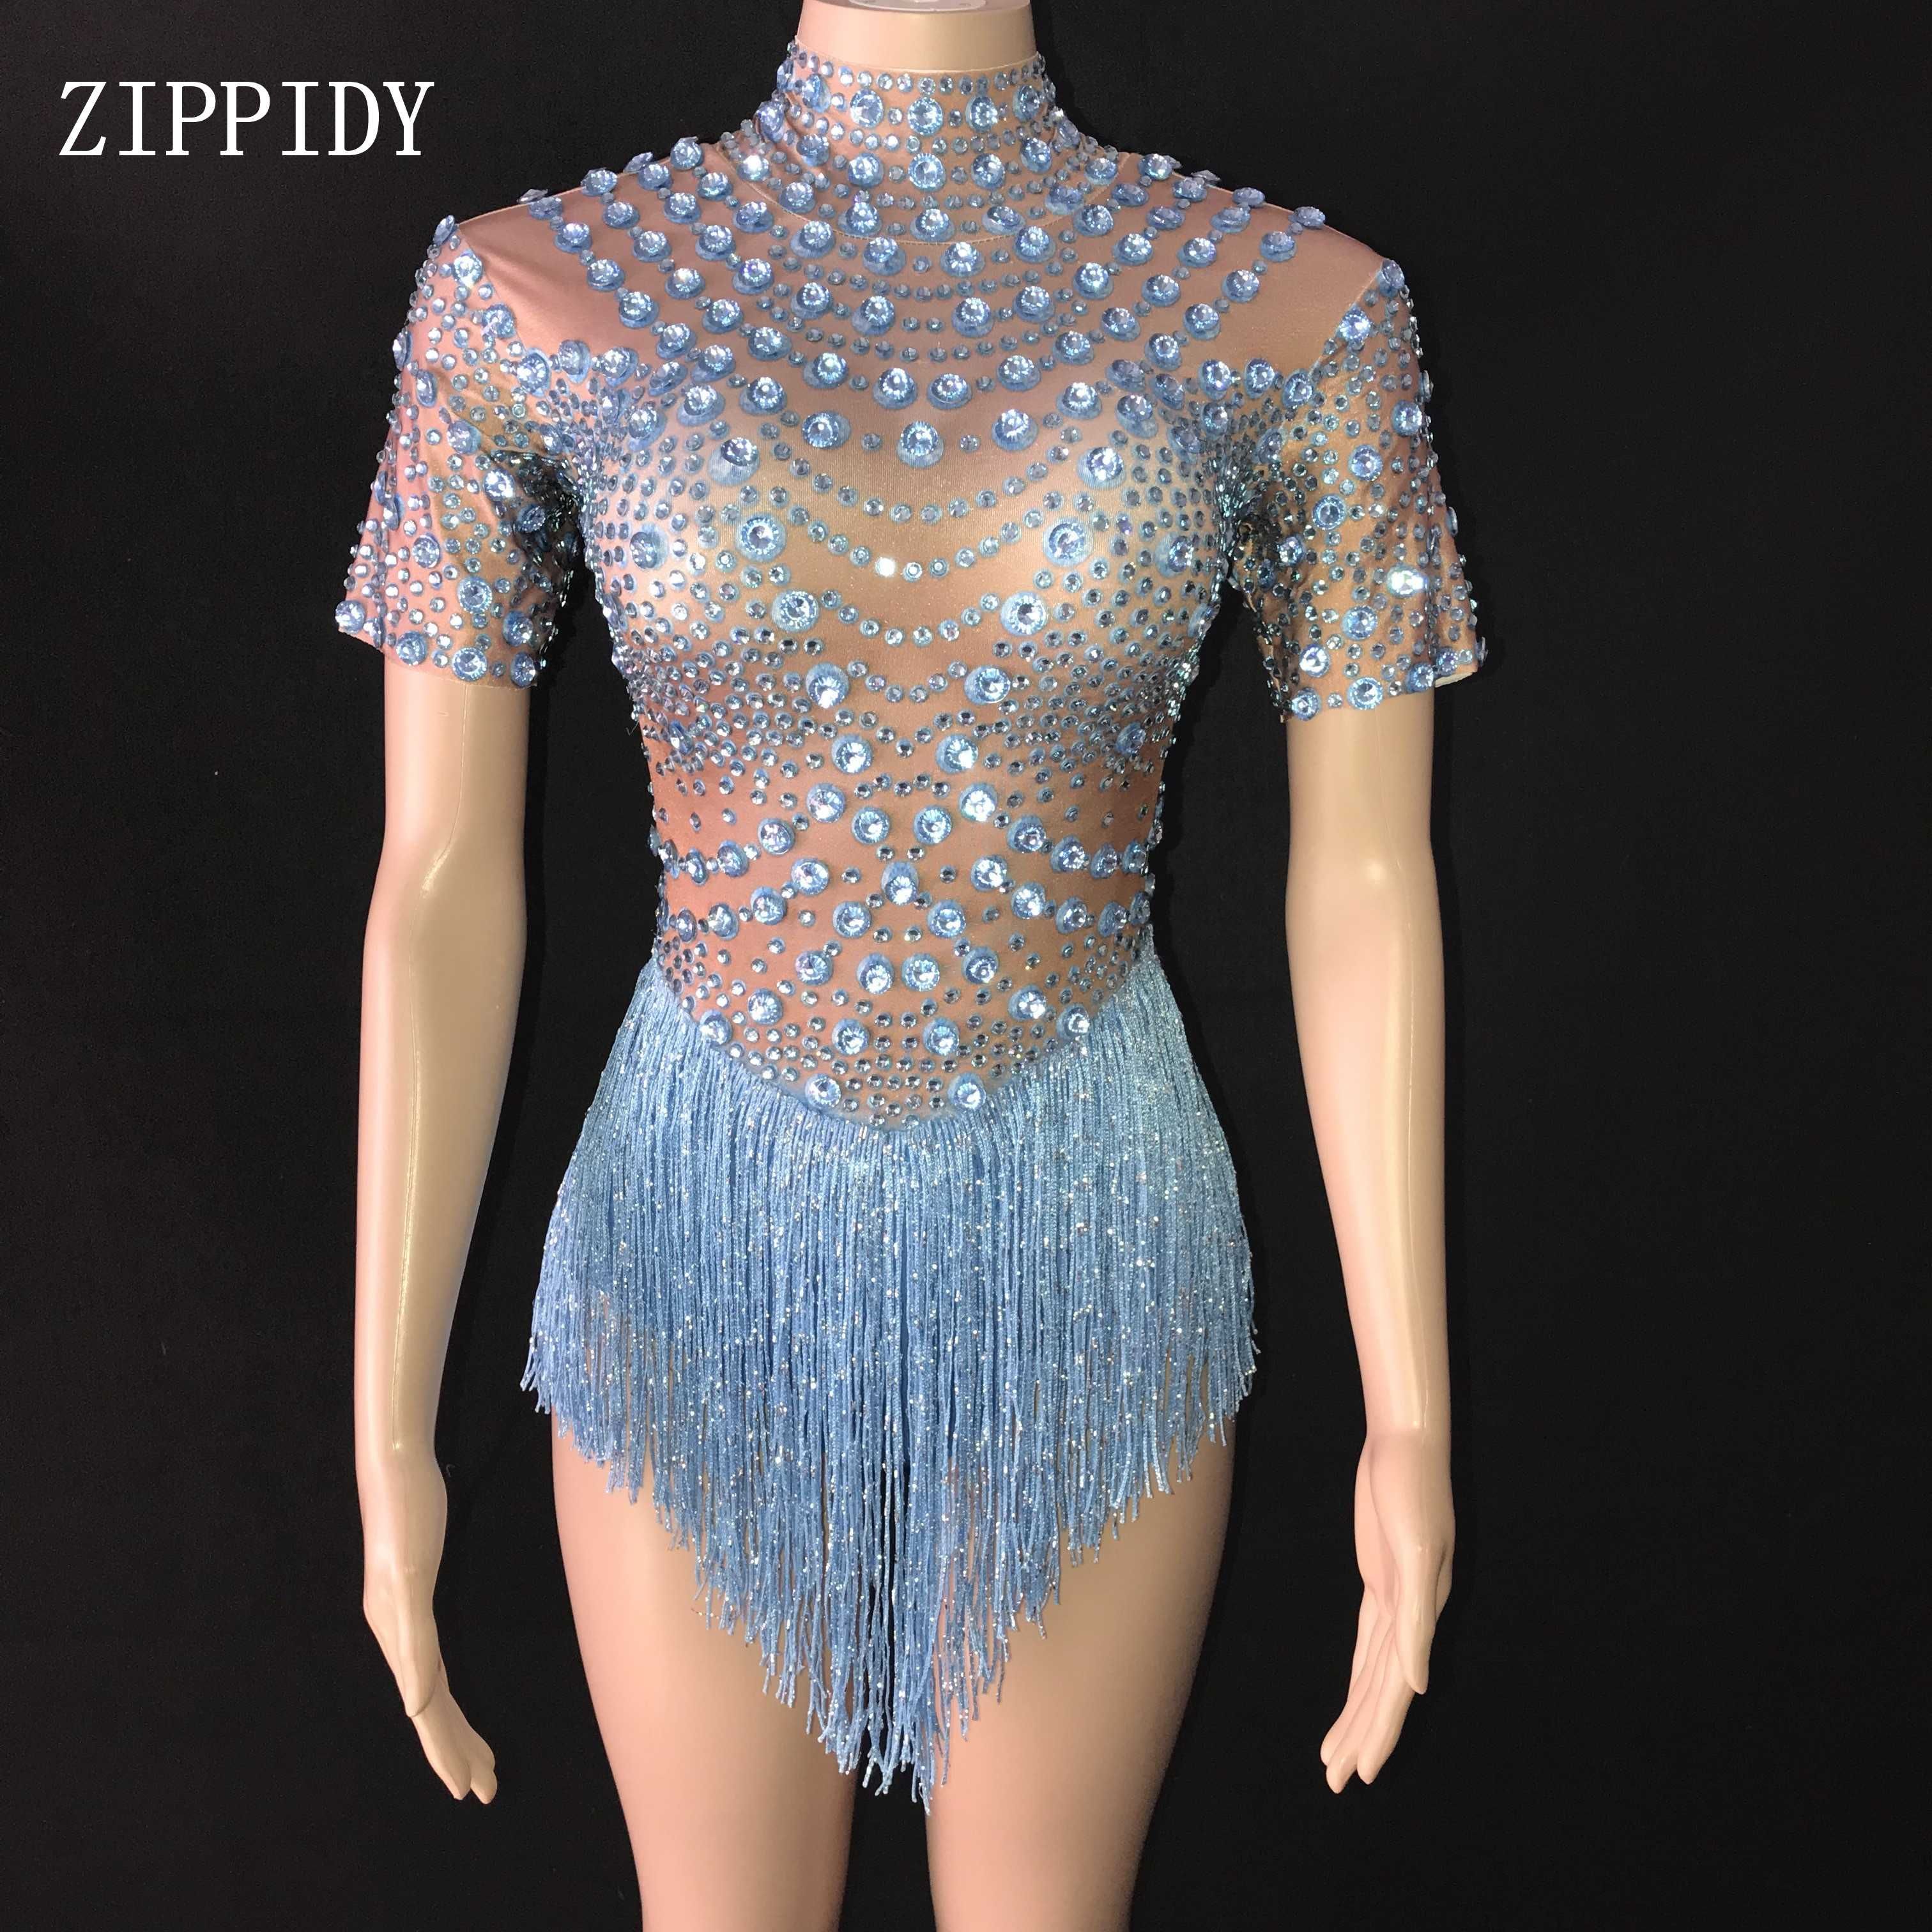 Gold Rhinestones Tassel Bodysuit Leotard Dance Wear Singer Crystals Costume